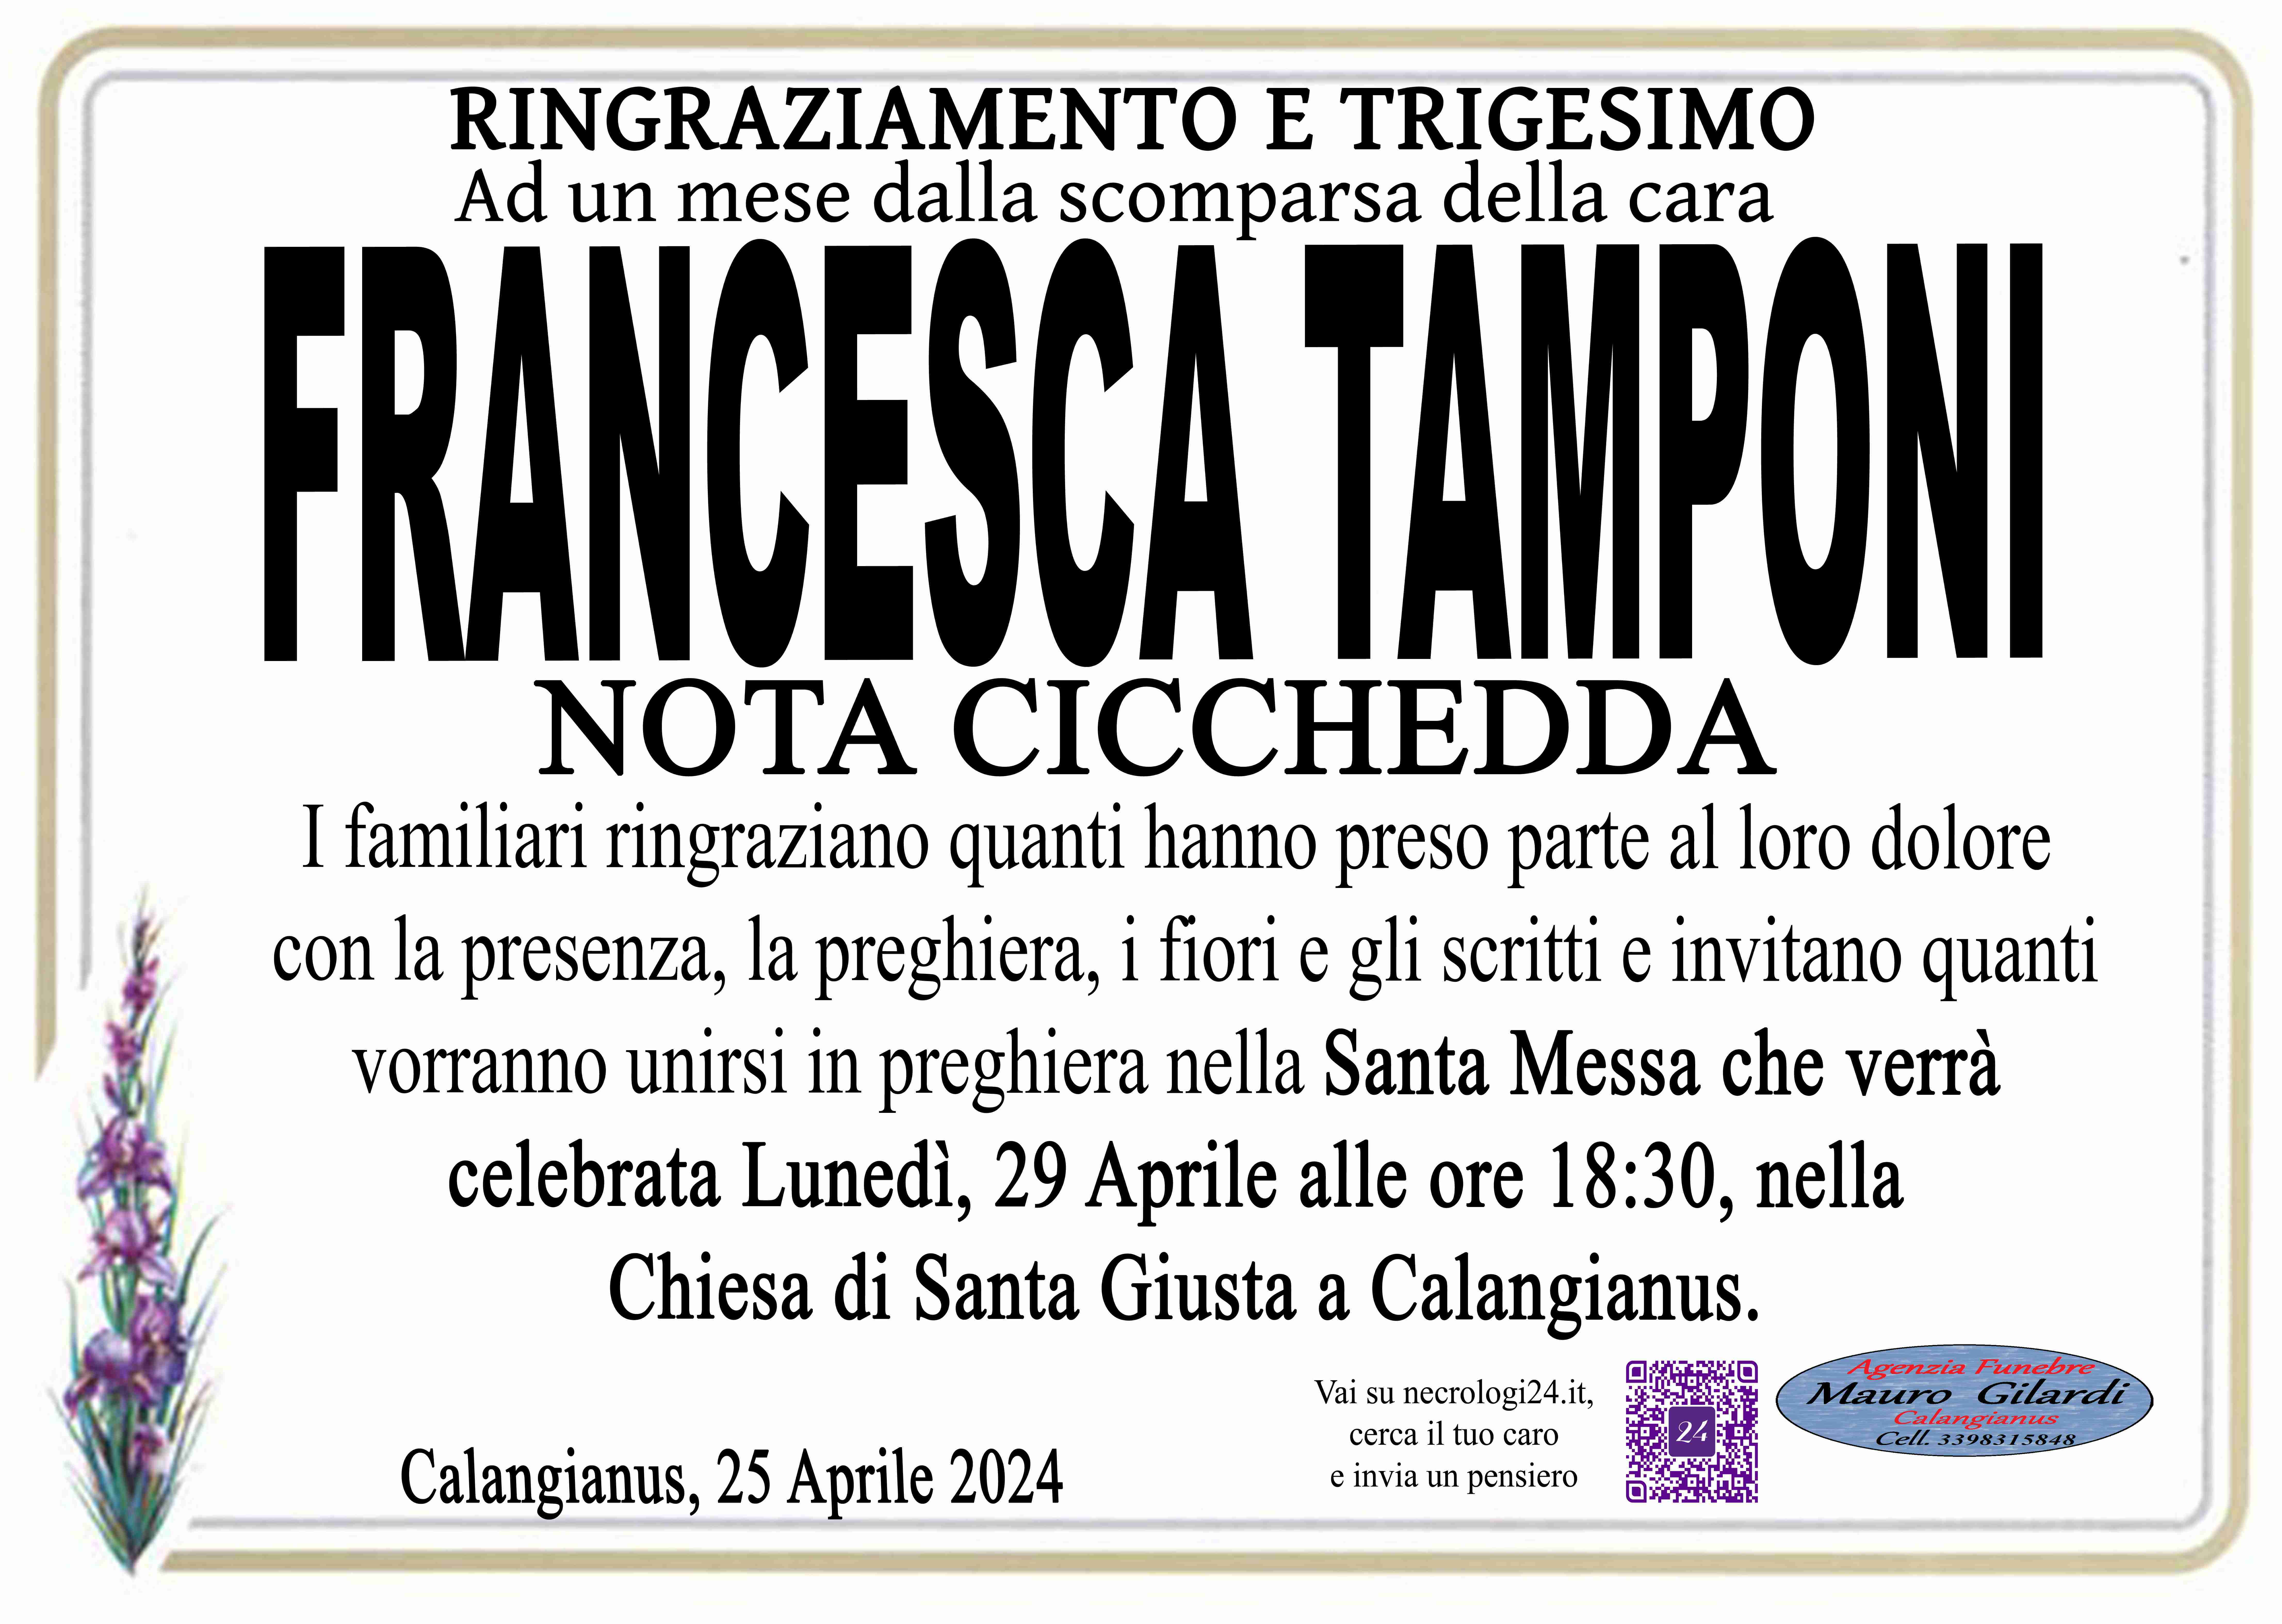 Francesca Tamponi